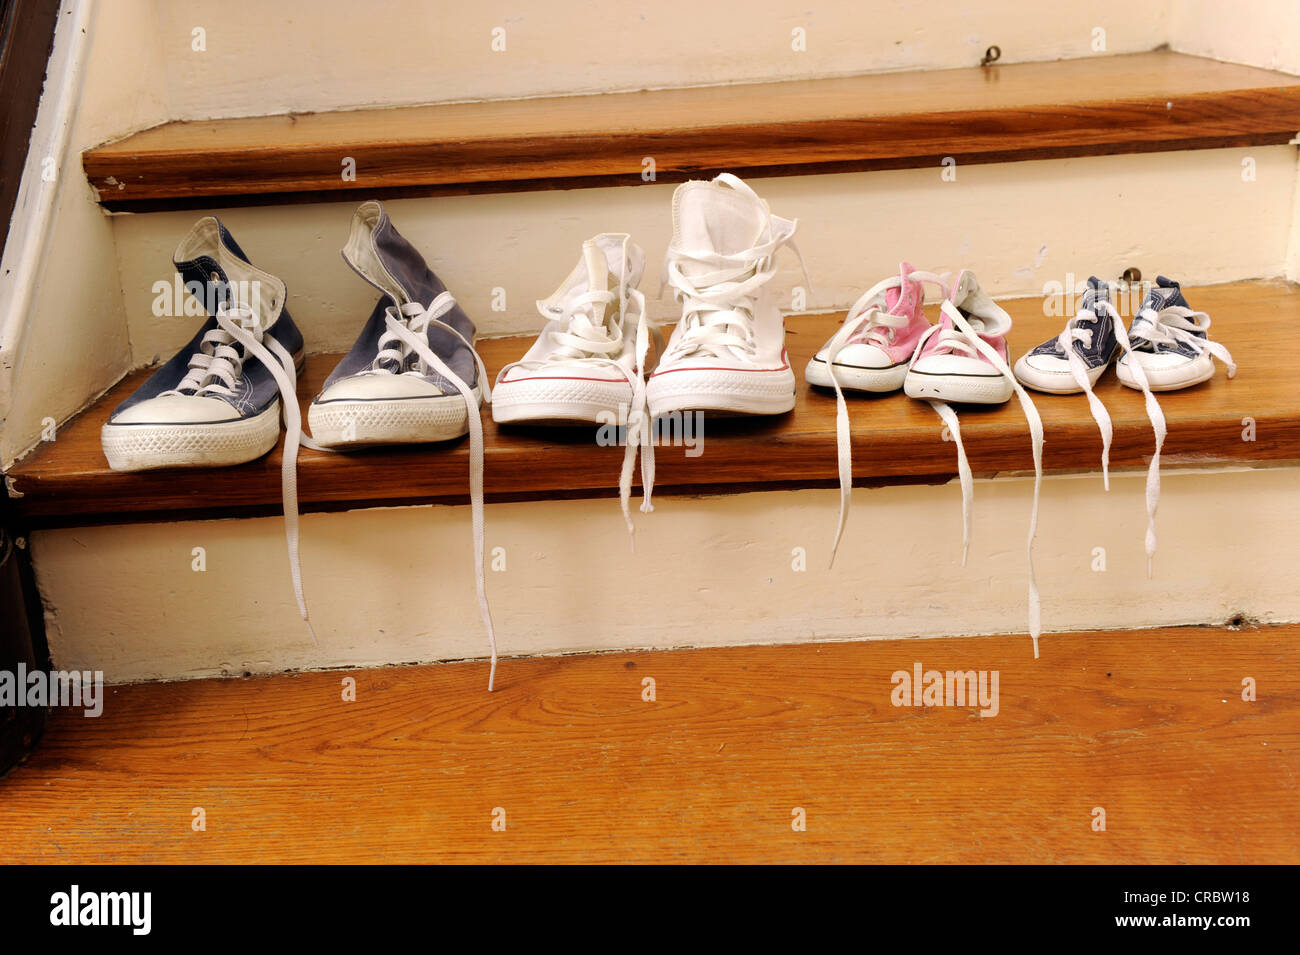 Calzado deportivo de una familia con dos niños, alineados en una escalera  Fotografía de stock - Alamy